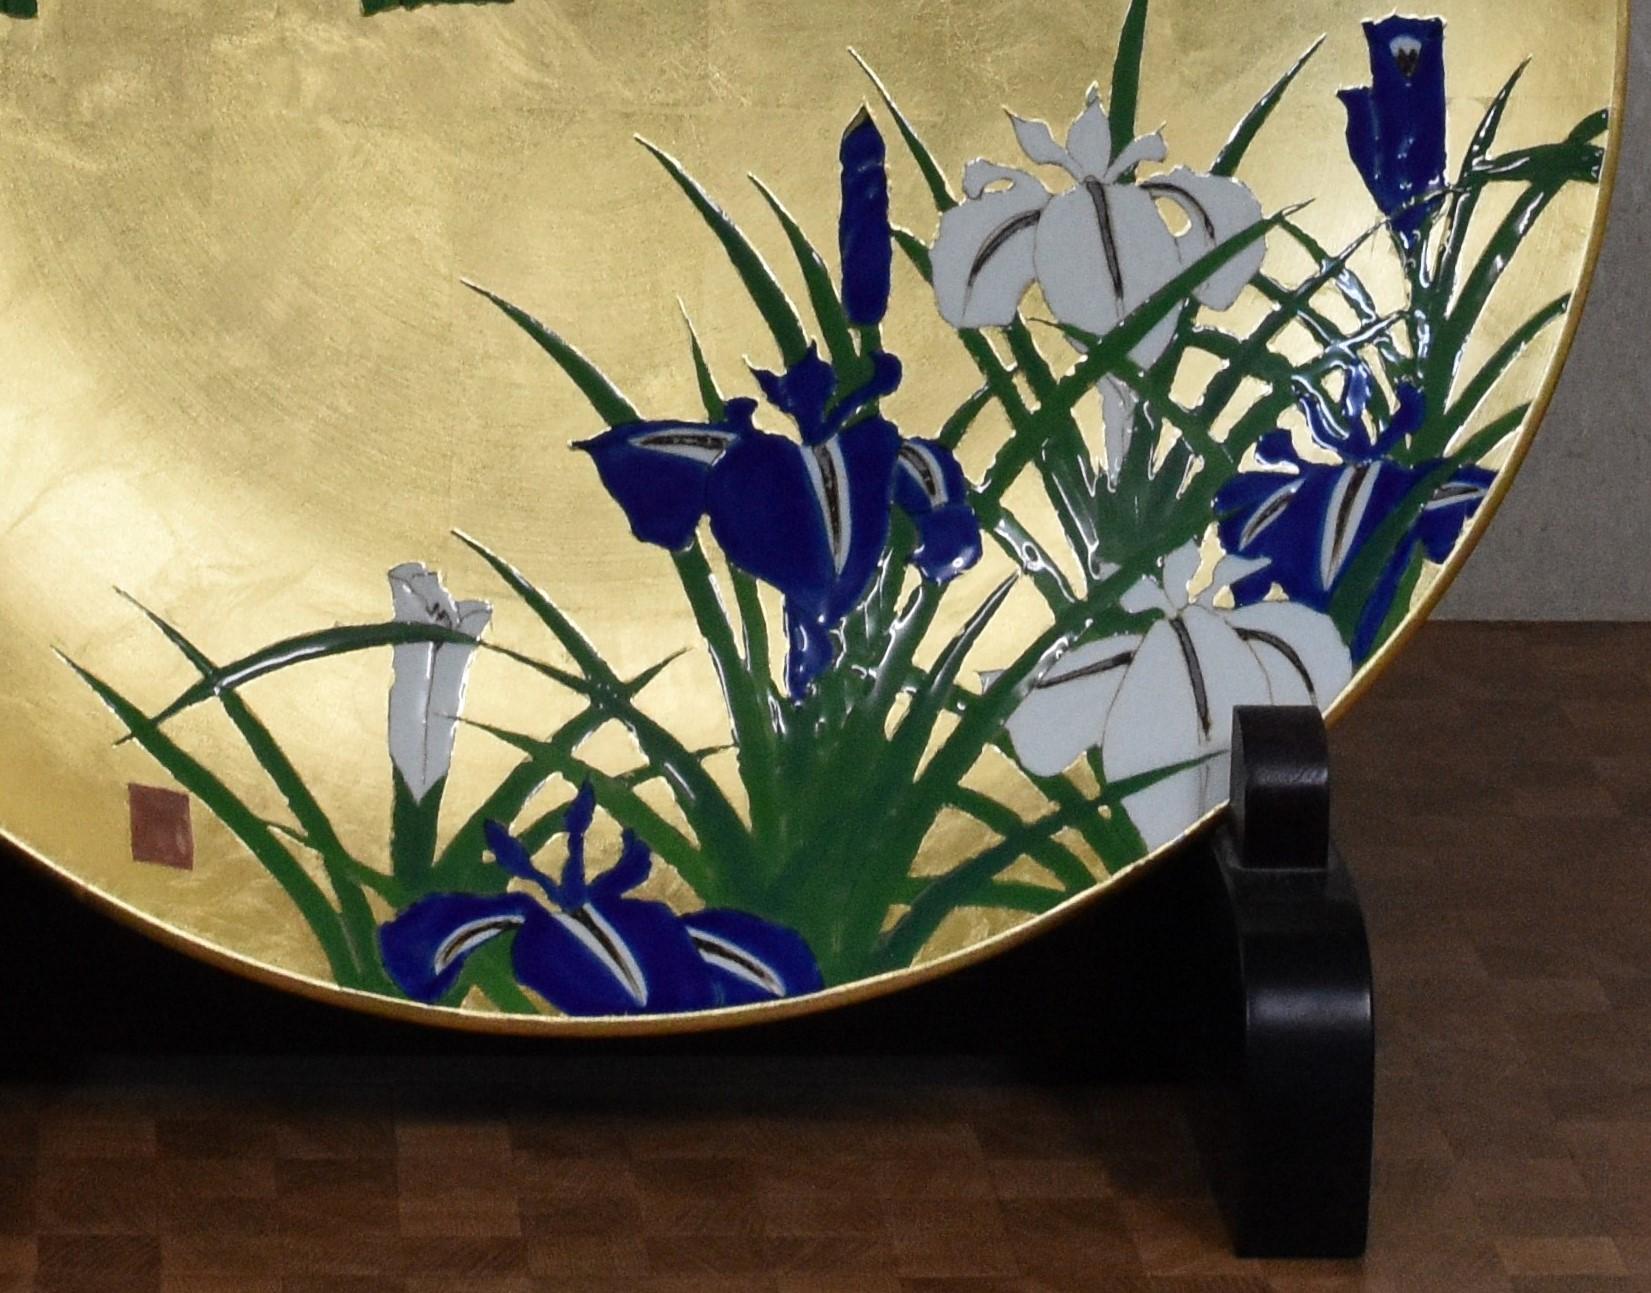 Außergewöhnliches japanisches, zeitgenössisches, dekoratives Porzellan-Ladegerät in Museumsqualität, atemberaubend handbemalt mit einem atemberaubenden Iris-Motiv in lebhaftem Violett/Blau, Weiß und Grün auf einem prächtigen Hintergrund aus